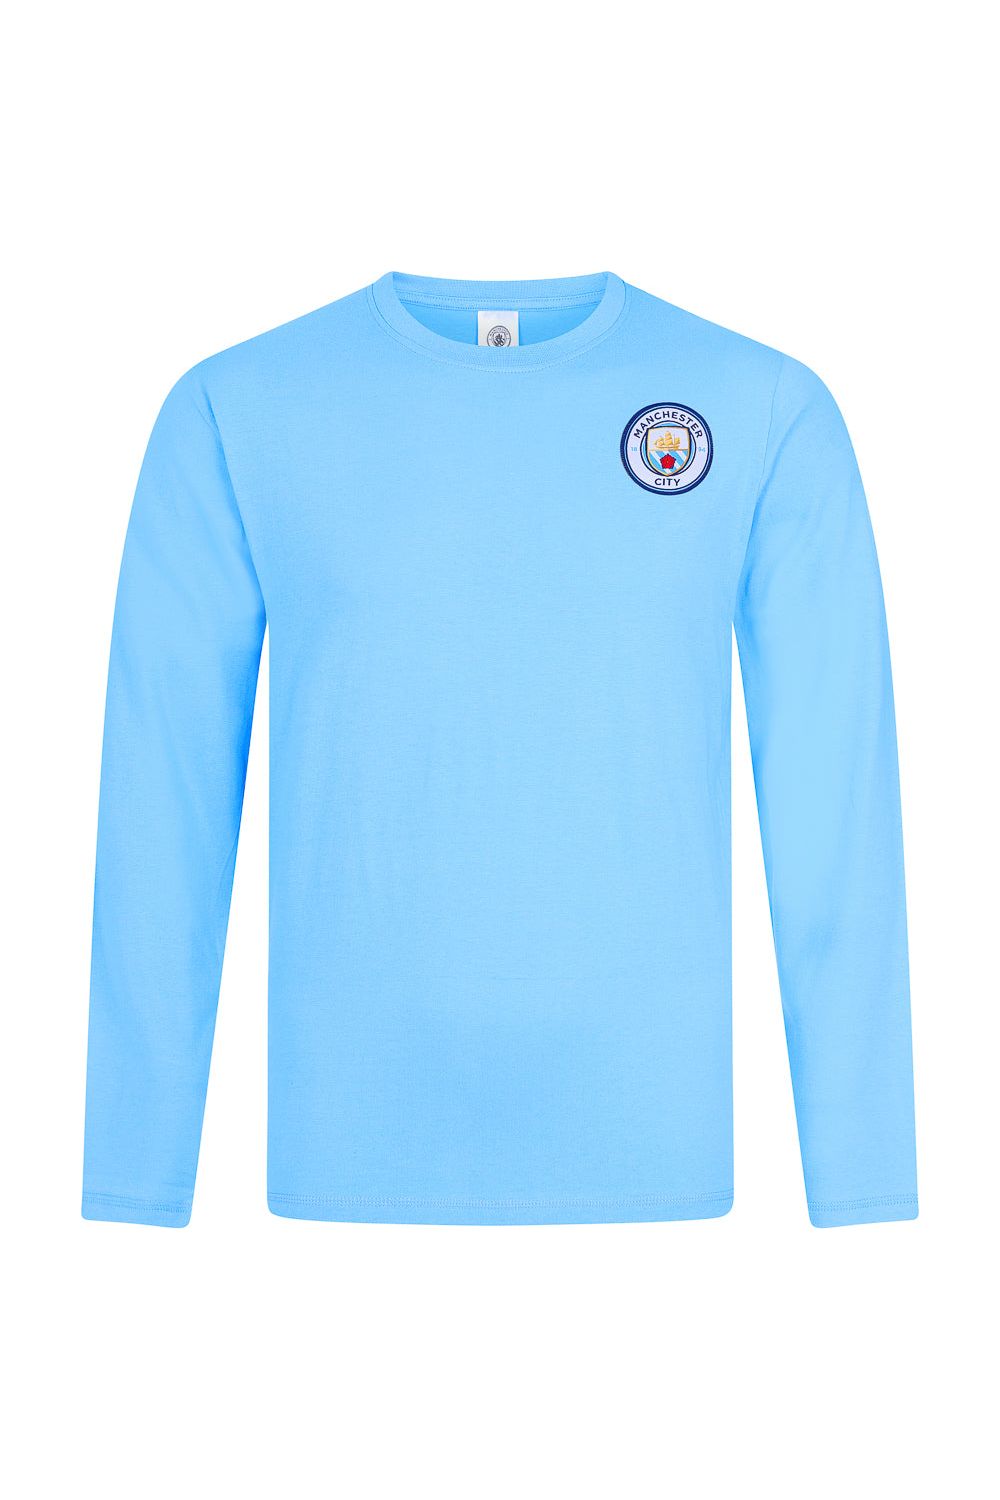 Mens Manchester City Football Club Long Pyjamas - Pyjamas.com